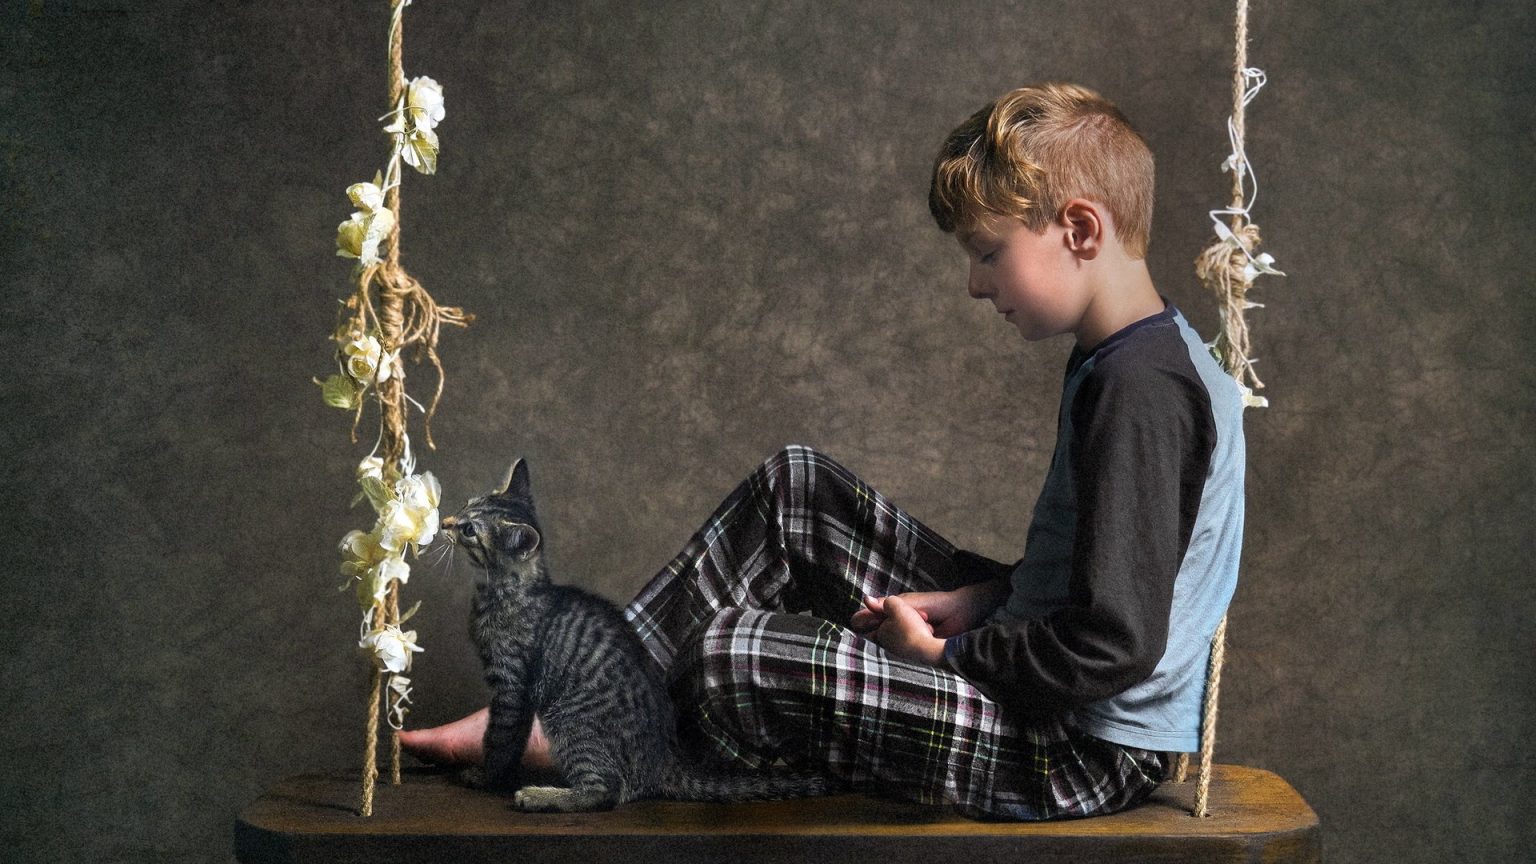 Fond d’écran gratuit: Un garçon assis sur une balançoire avec un chat